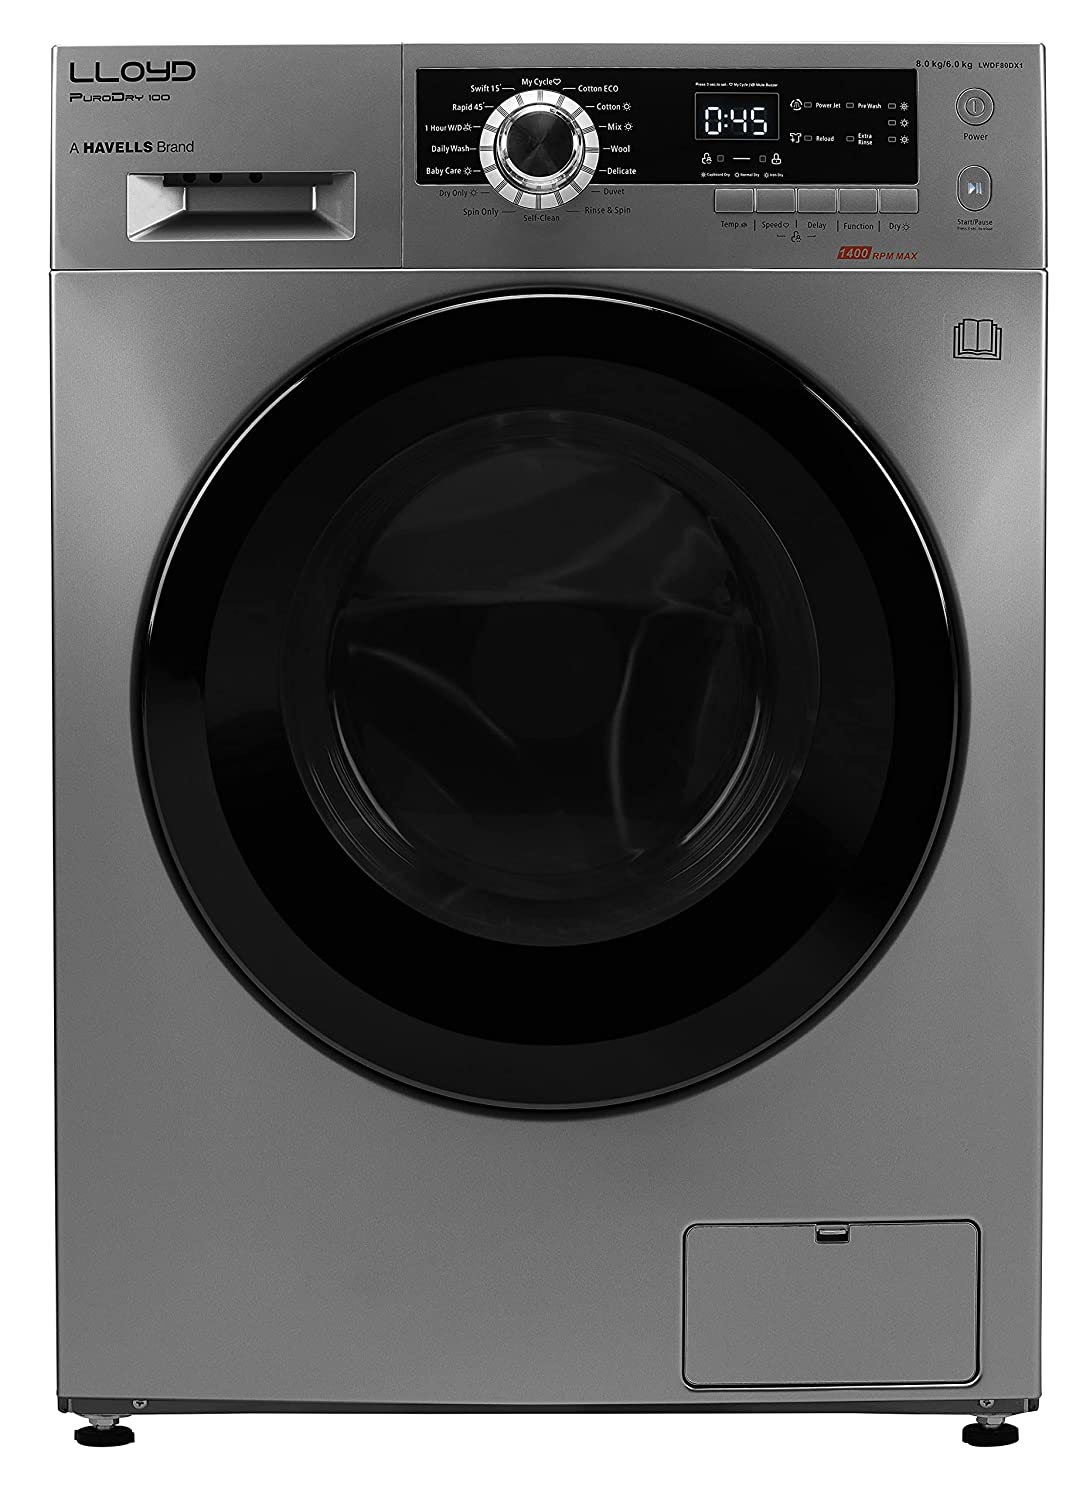 Amazon पर सबसे ज्यादा बिकने वाले बेस्ट 5 Washer Dryer, पूरी तरह से सूख जाते हैं कपड़े